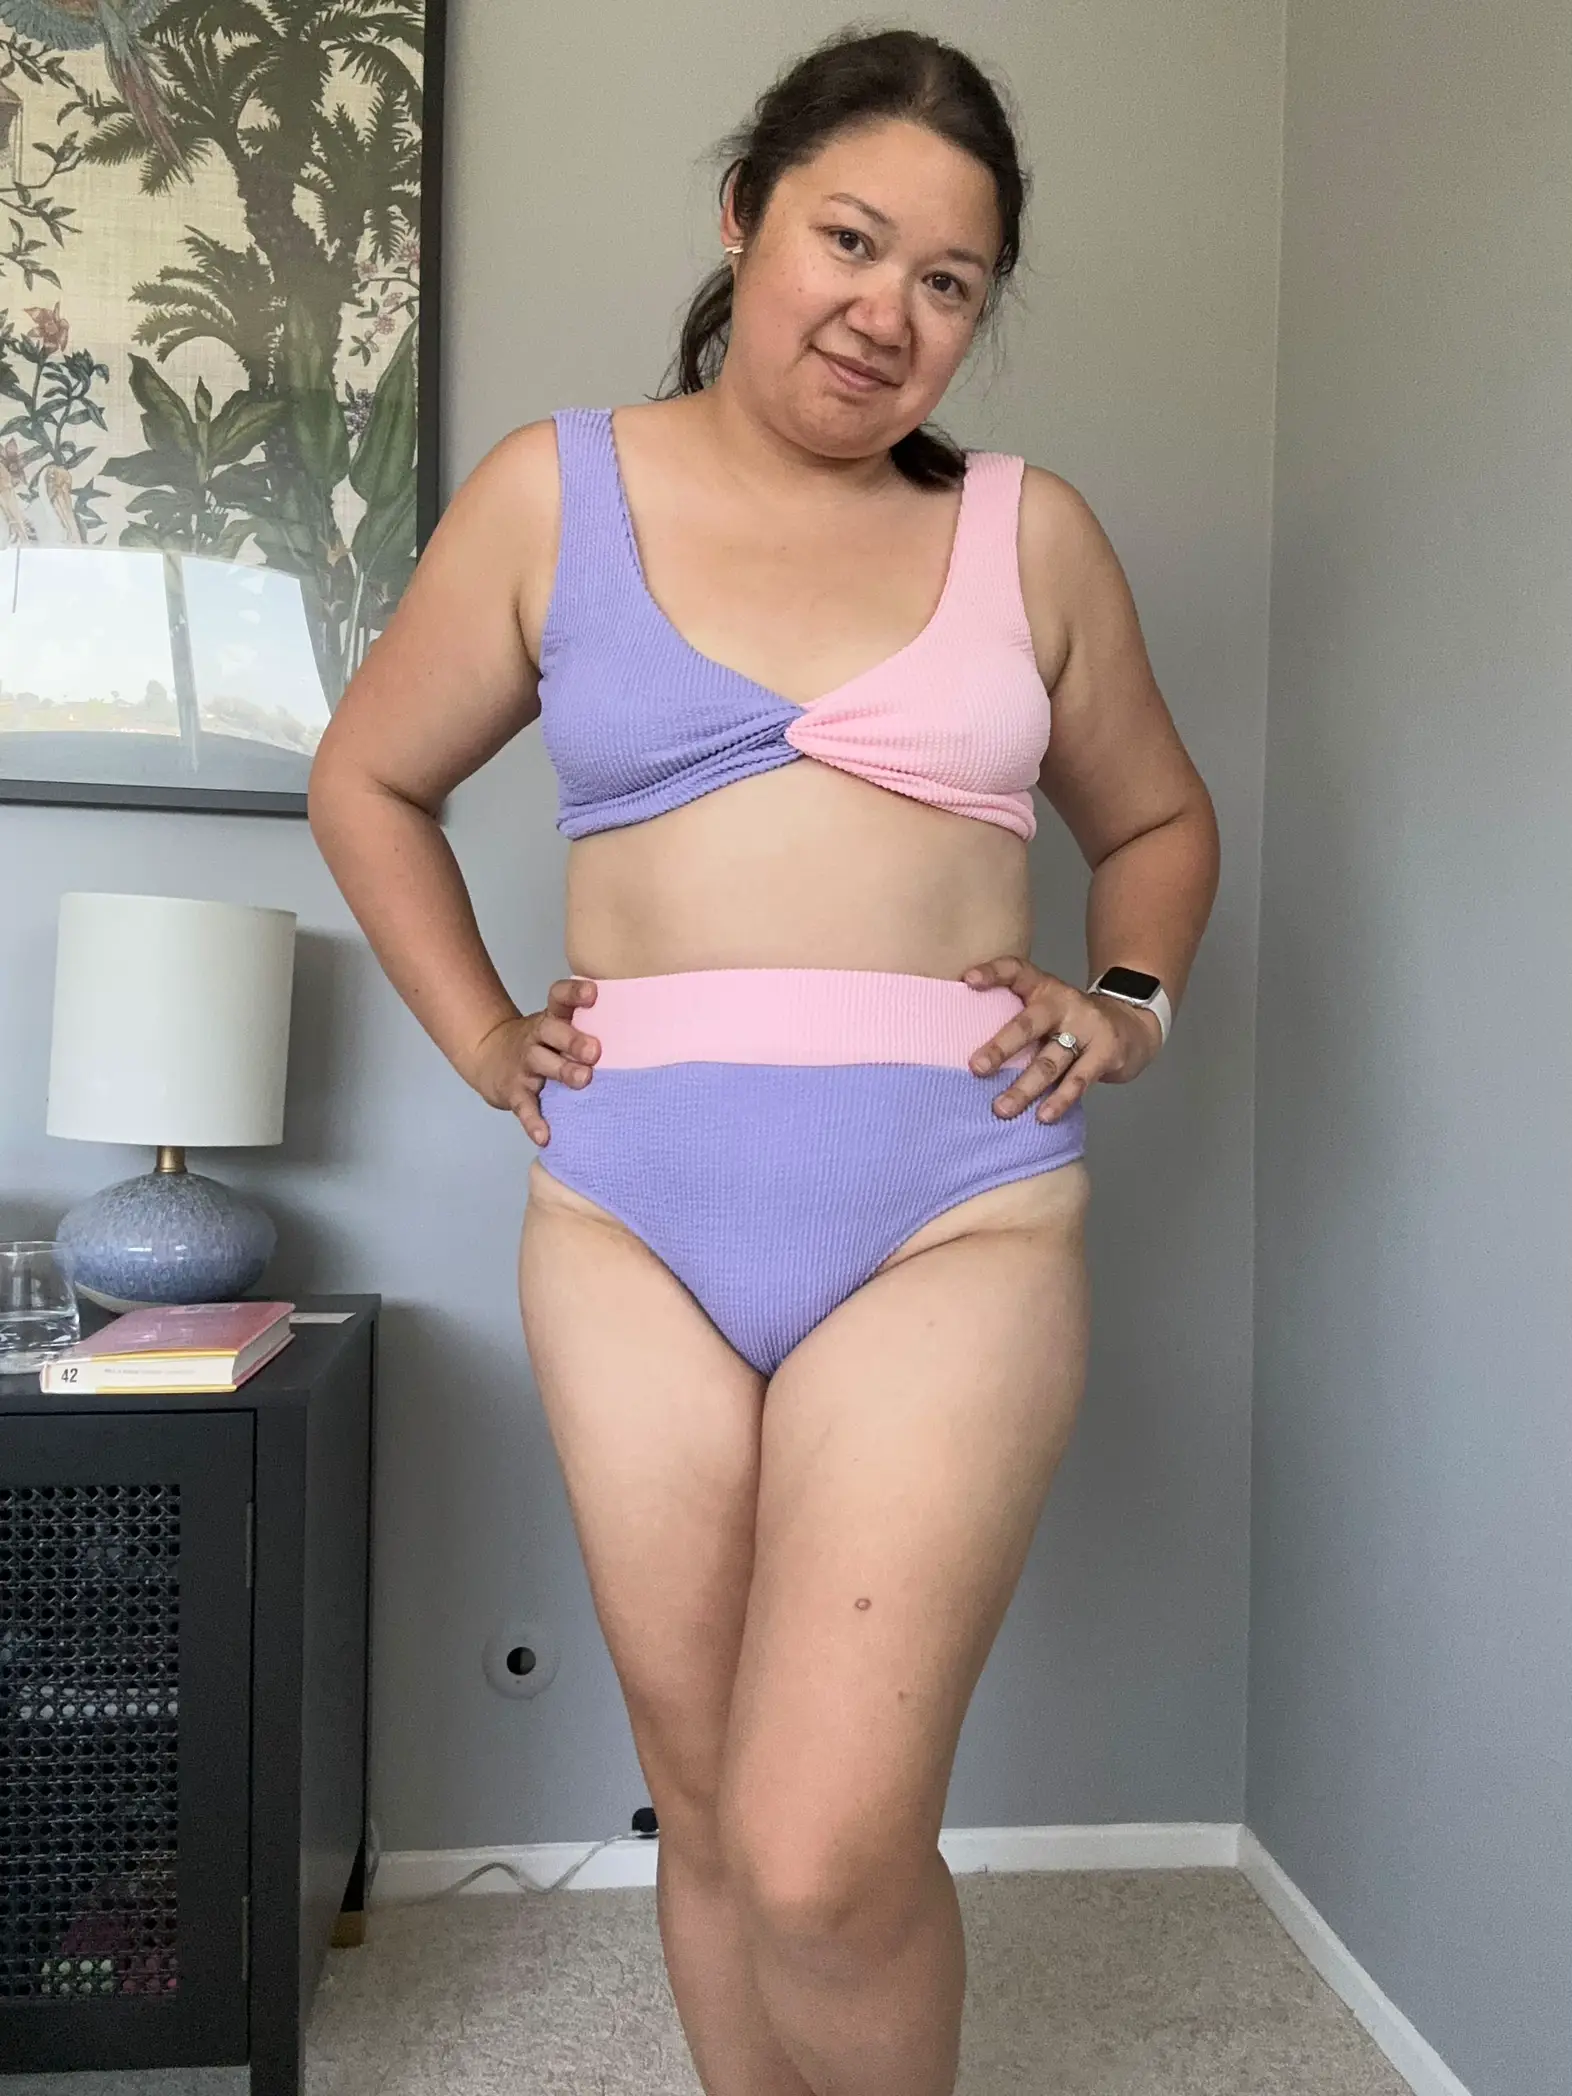 I'm a size 8 with 34 DD boobs - I did a Target bikini haul & was